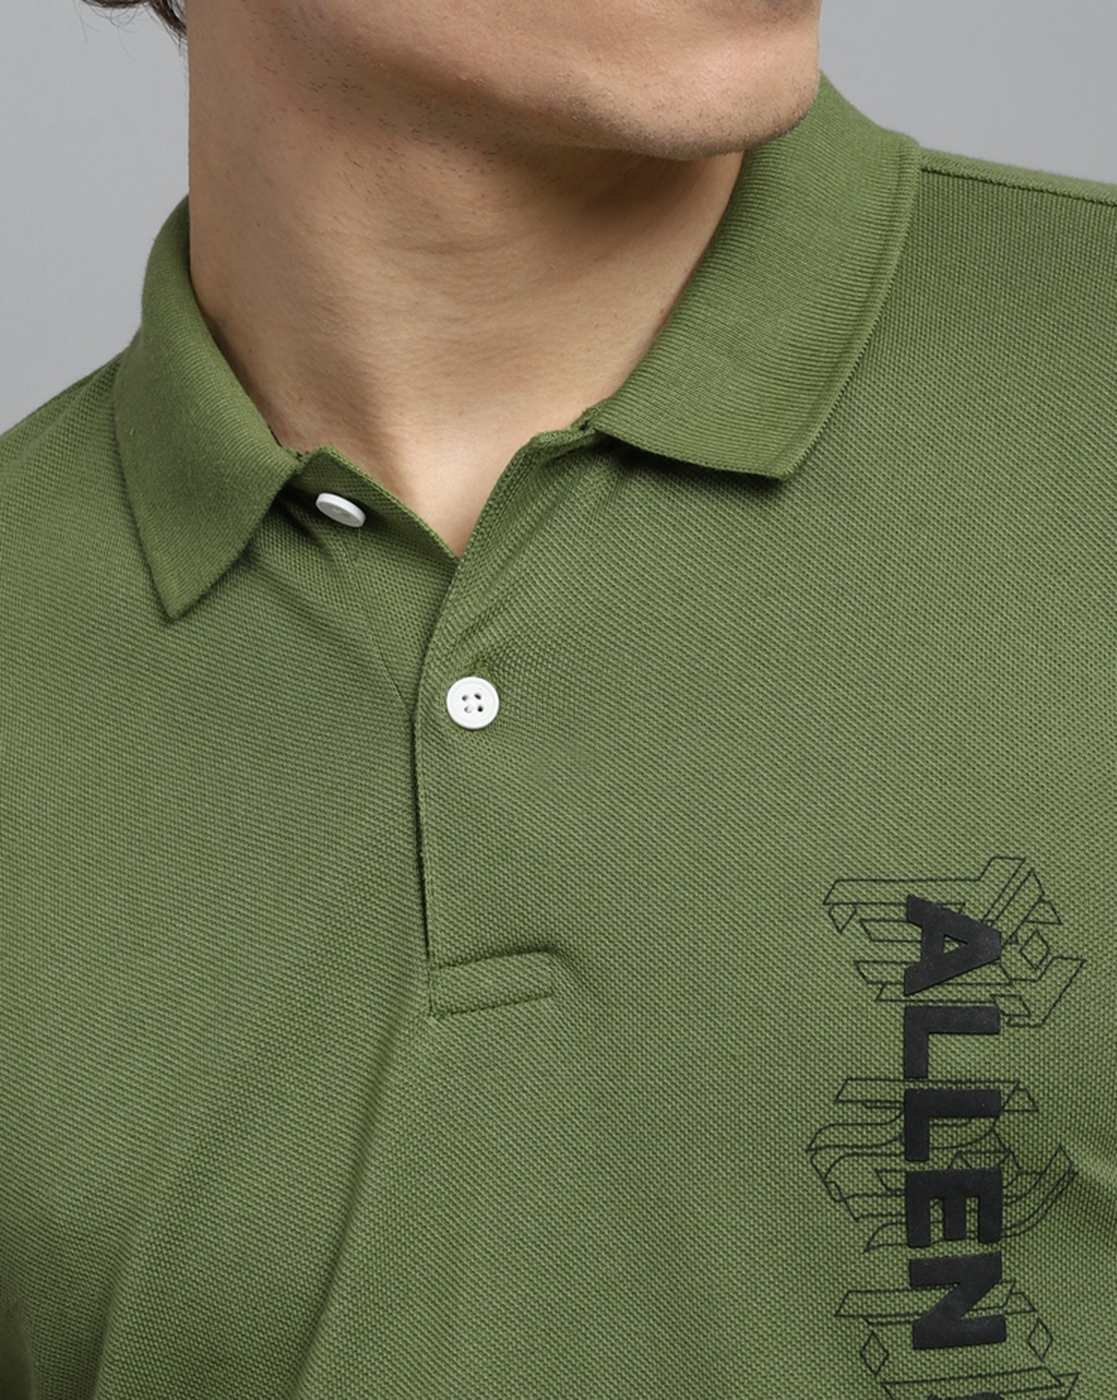 Allen Solly plain sea green cotton polo t shirt - G3-MTS16179